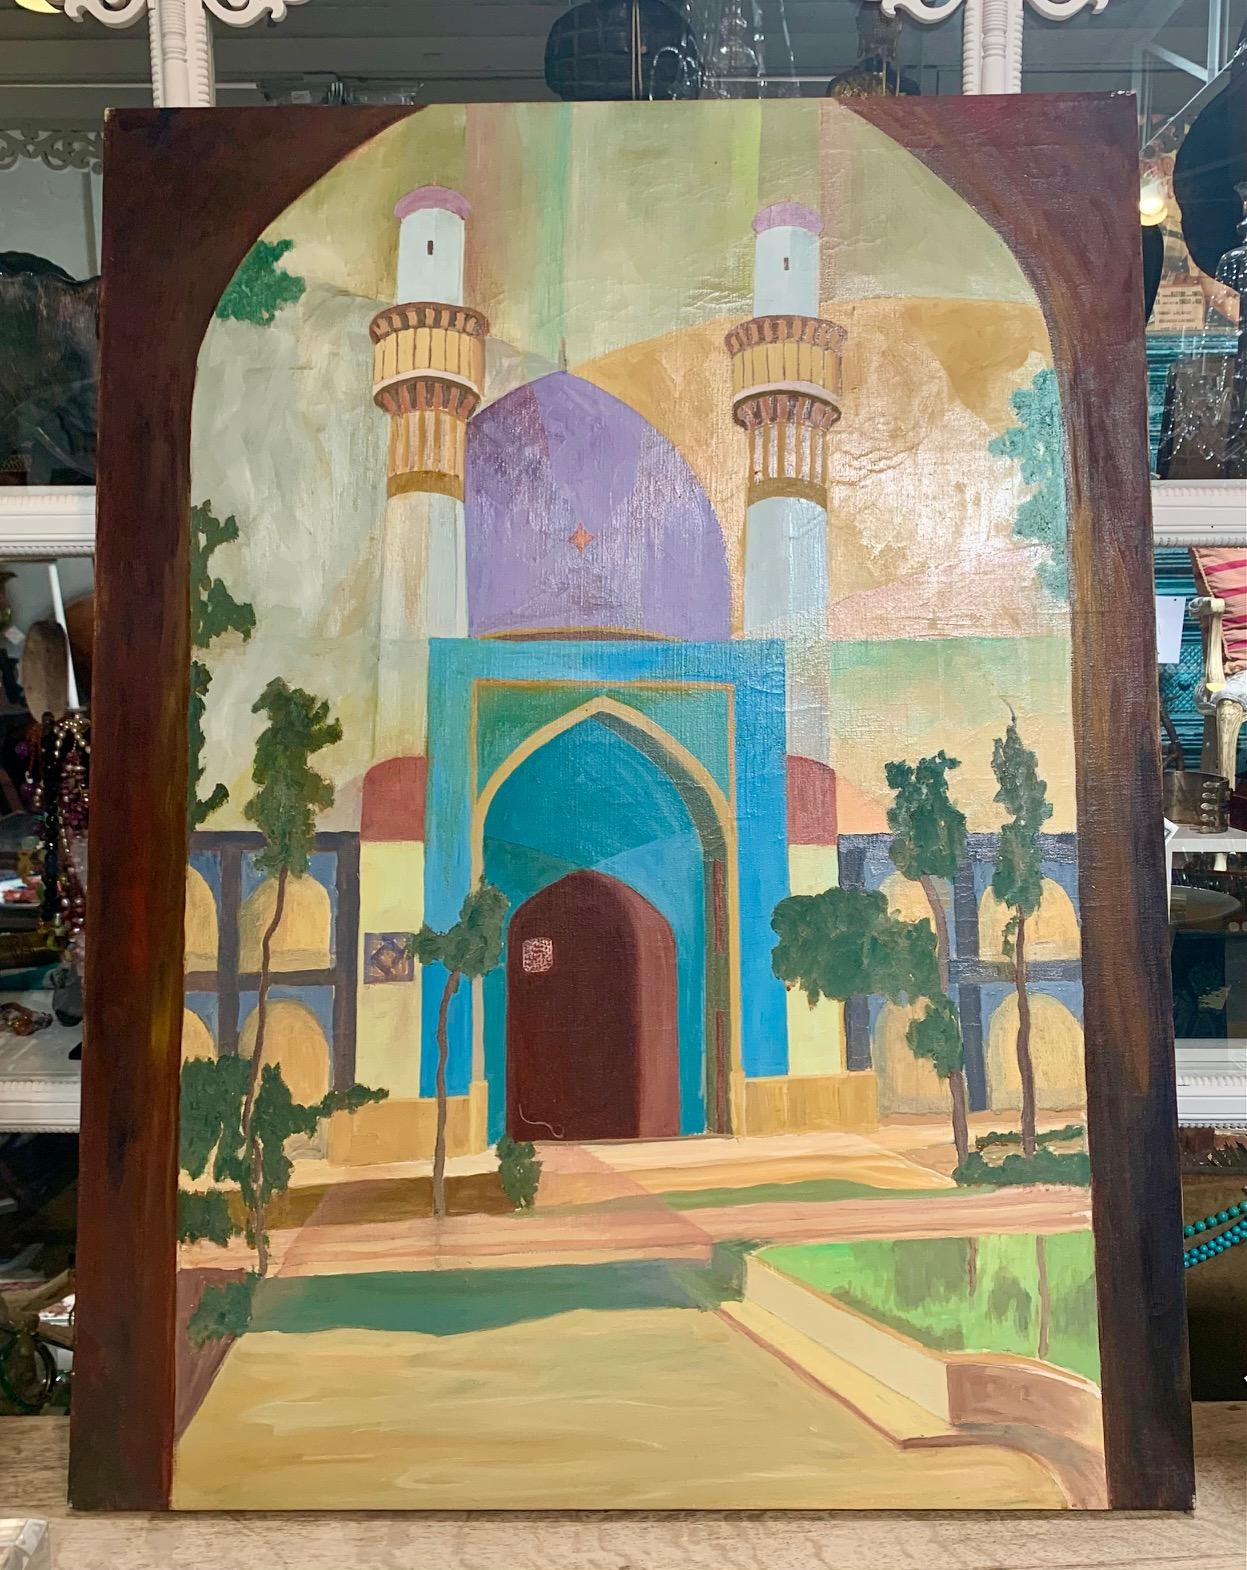 Grand tableau marocain post-moderne aux couleurs vibrantes et aux lignes épurées. Une superbe œuvre d'art pour illuminer n'importe quelle pièce.